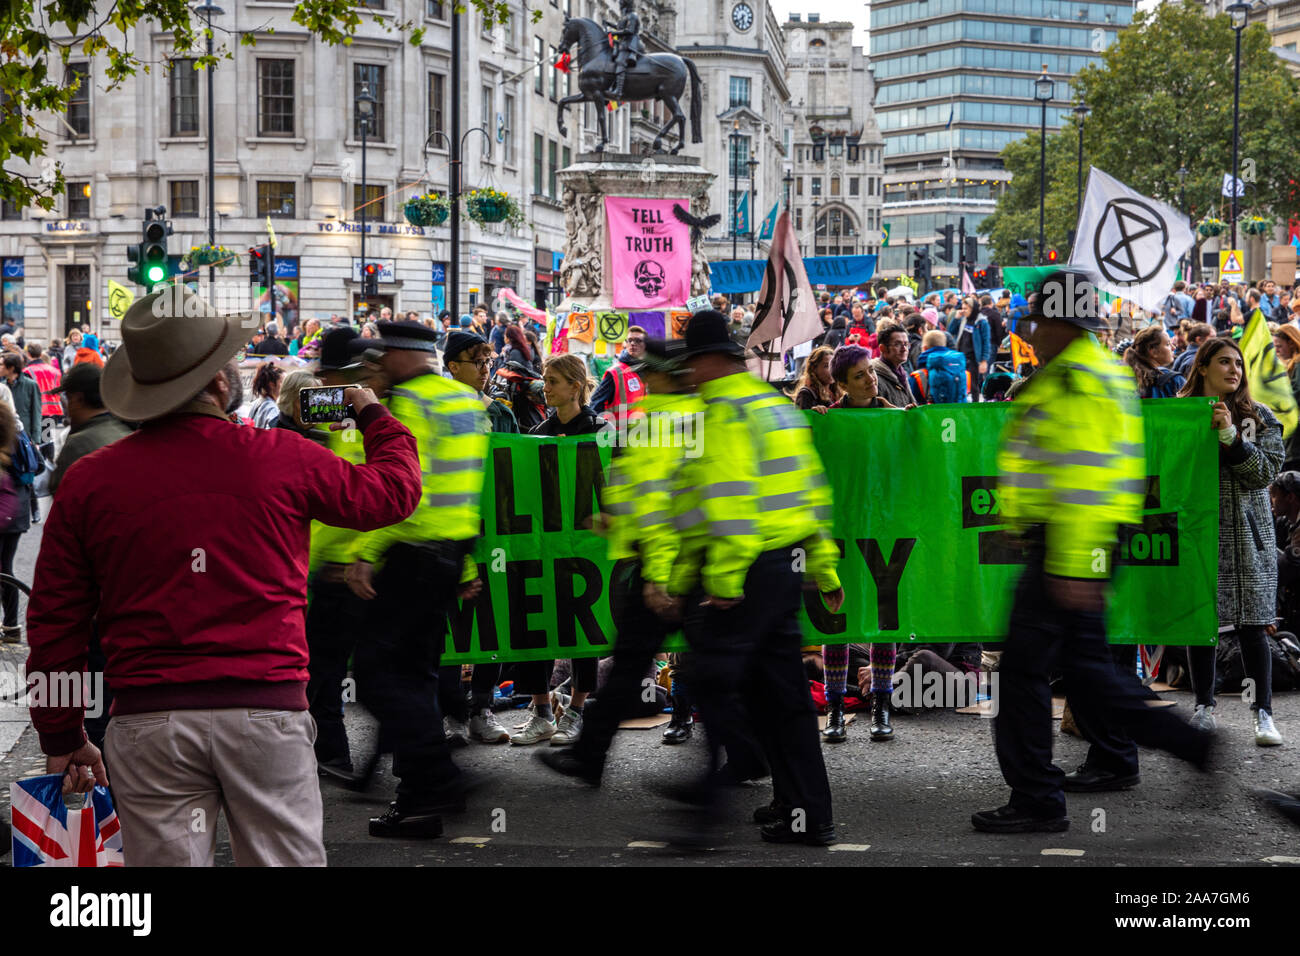 Londres, Inglaterra, Reino Unido - 10 de octubre de 2019: un turista toma una fotografía de una extinción rebelión protesta en Trafalgar Square en Londres central. Foto de stock